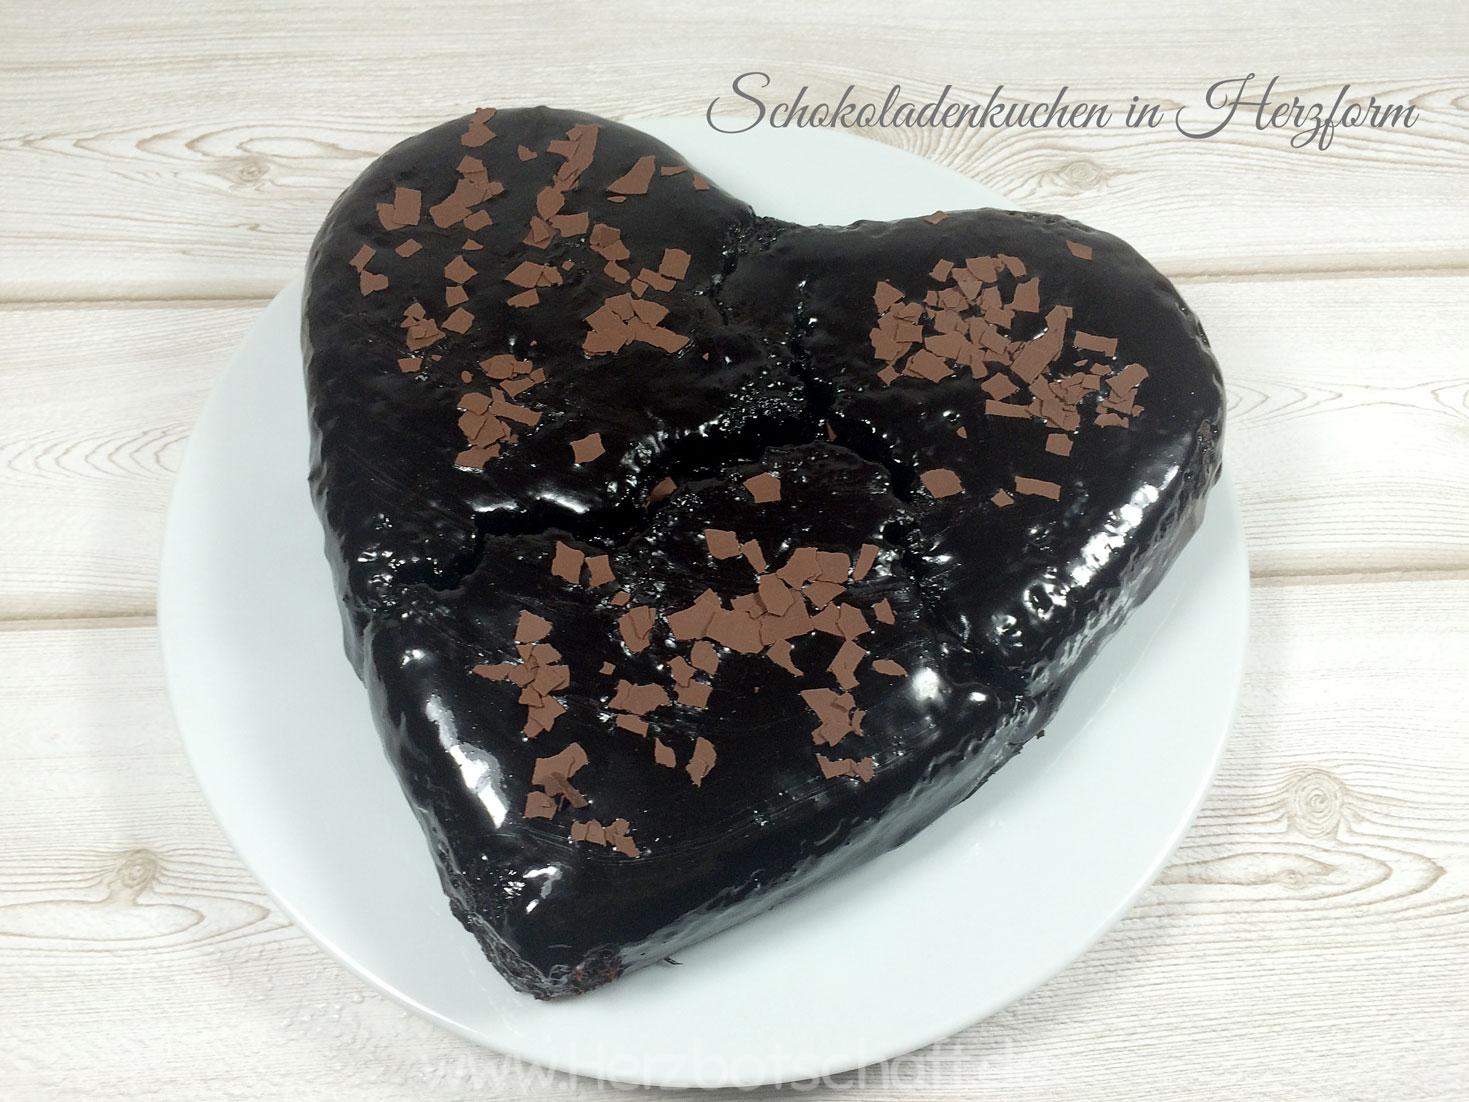 Rezept: Schokoladentorte/Schokokuchen in Herzform zum Valentinstag - ♥ ...